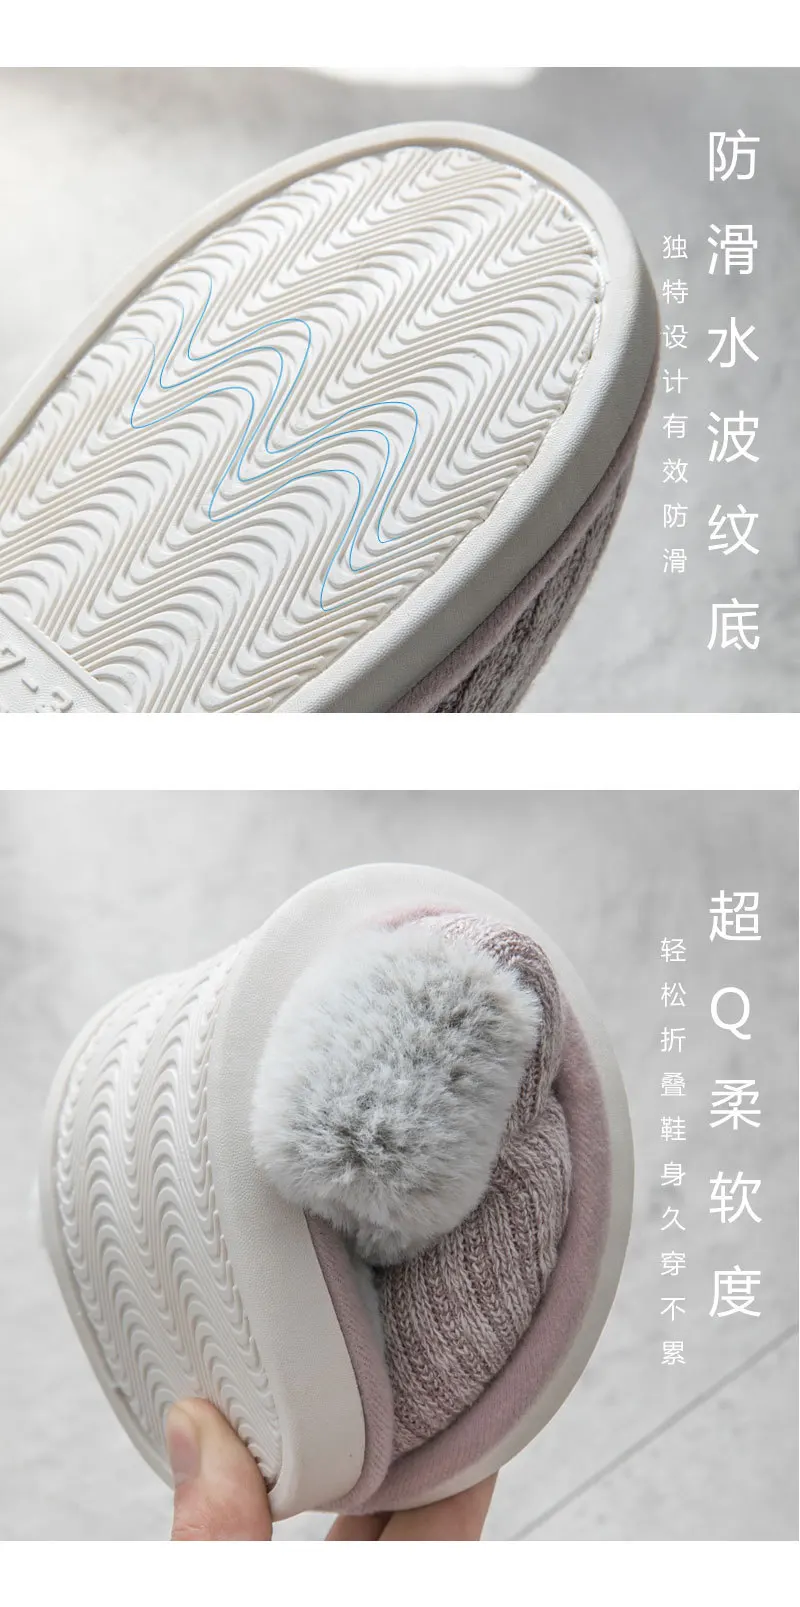 Xiaomi Youpin Новинка зимы; тапочки из материала на основе хлопка Для женщин; хлопковая обувь для дома эвакуатор комнатная из кроличьей шерсти, вязаные, хлопковые удобные простые теплые